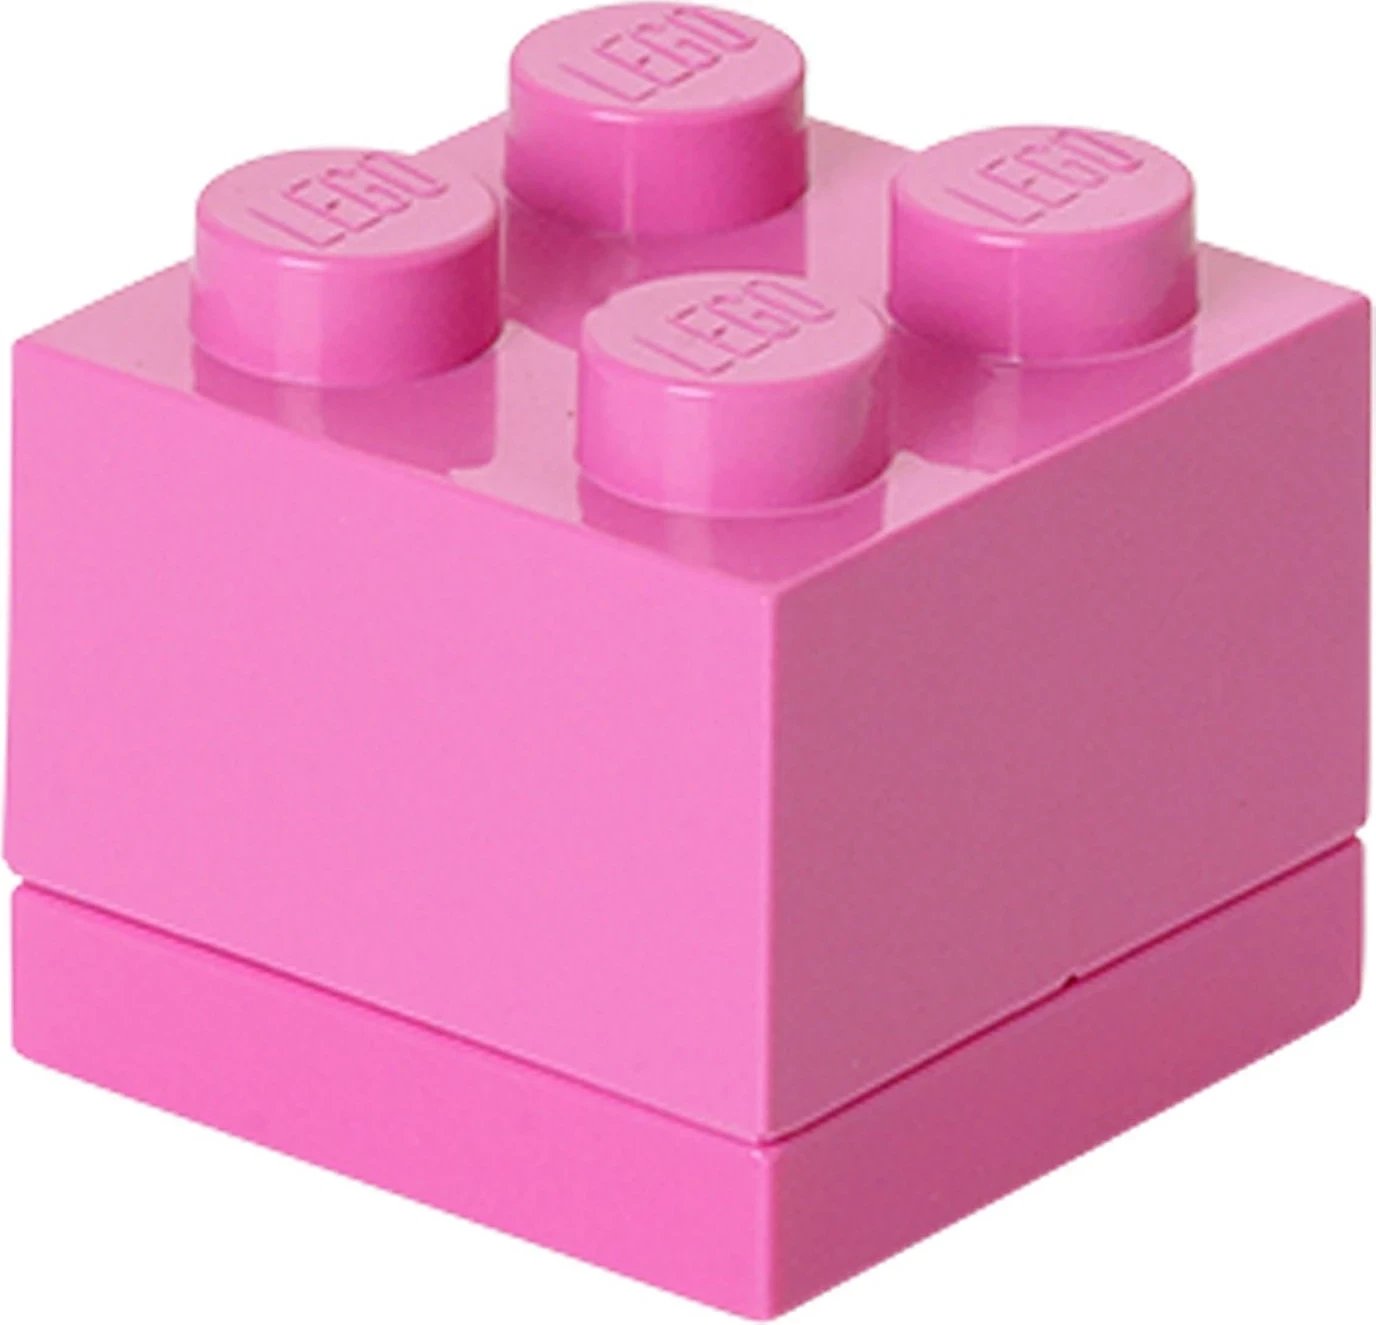 Kuti LEGO për lojëra, rozë